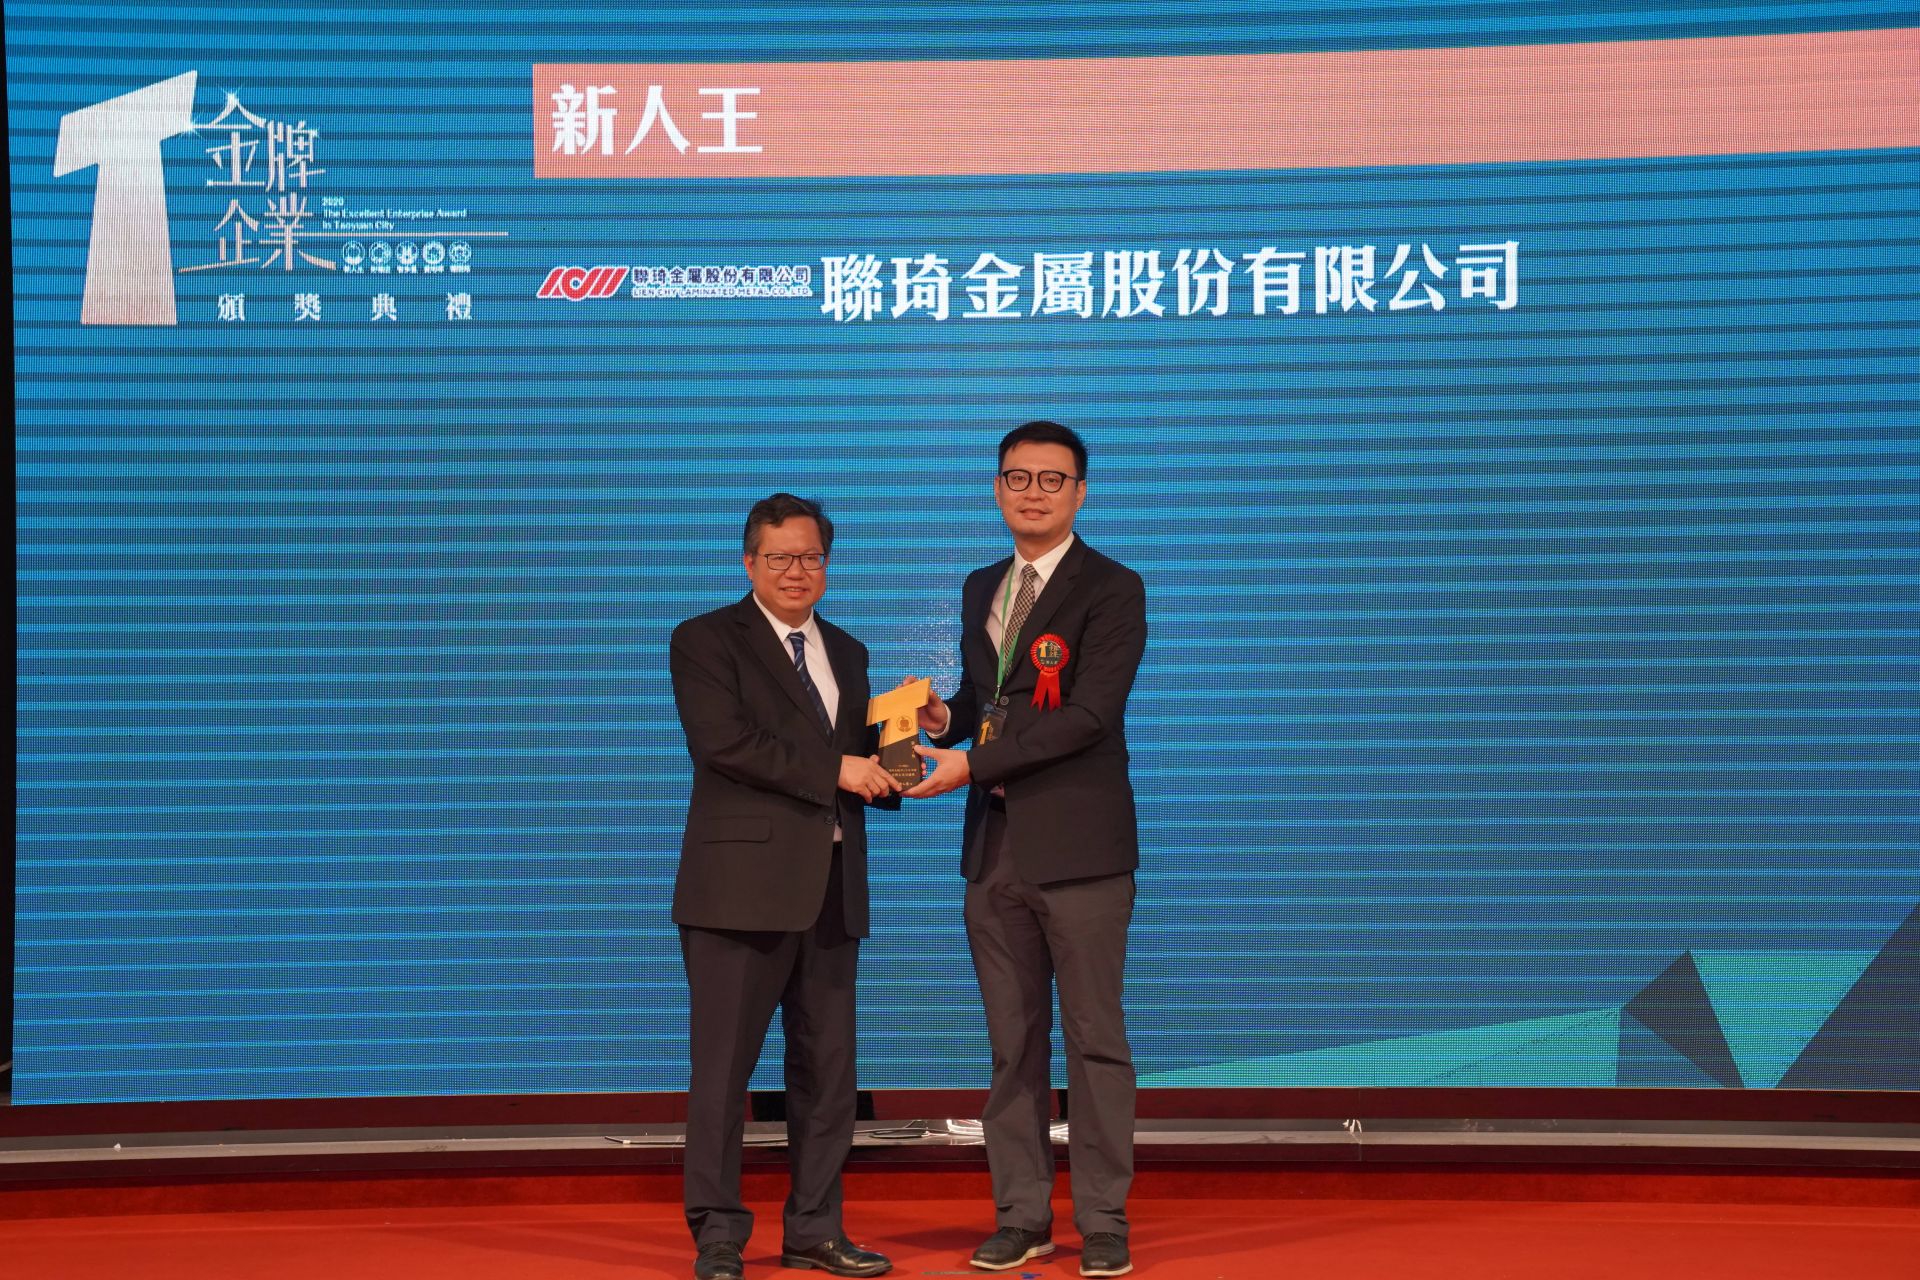 Мер міста Таоян та генеральний менеджер компанії Ліен Чи доктор Чуан на церемонії нагородження